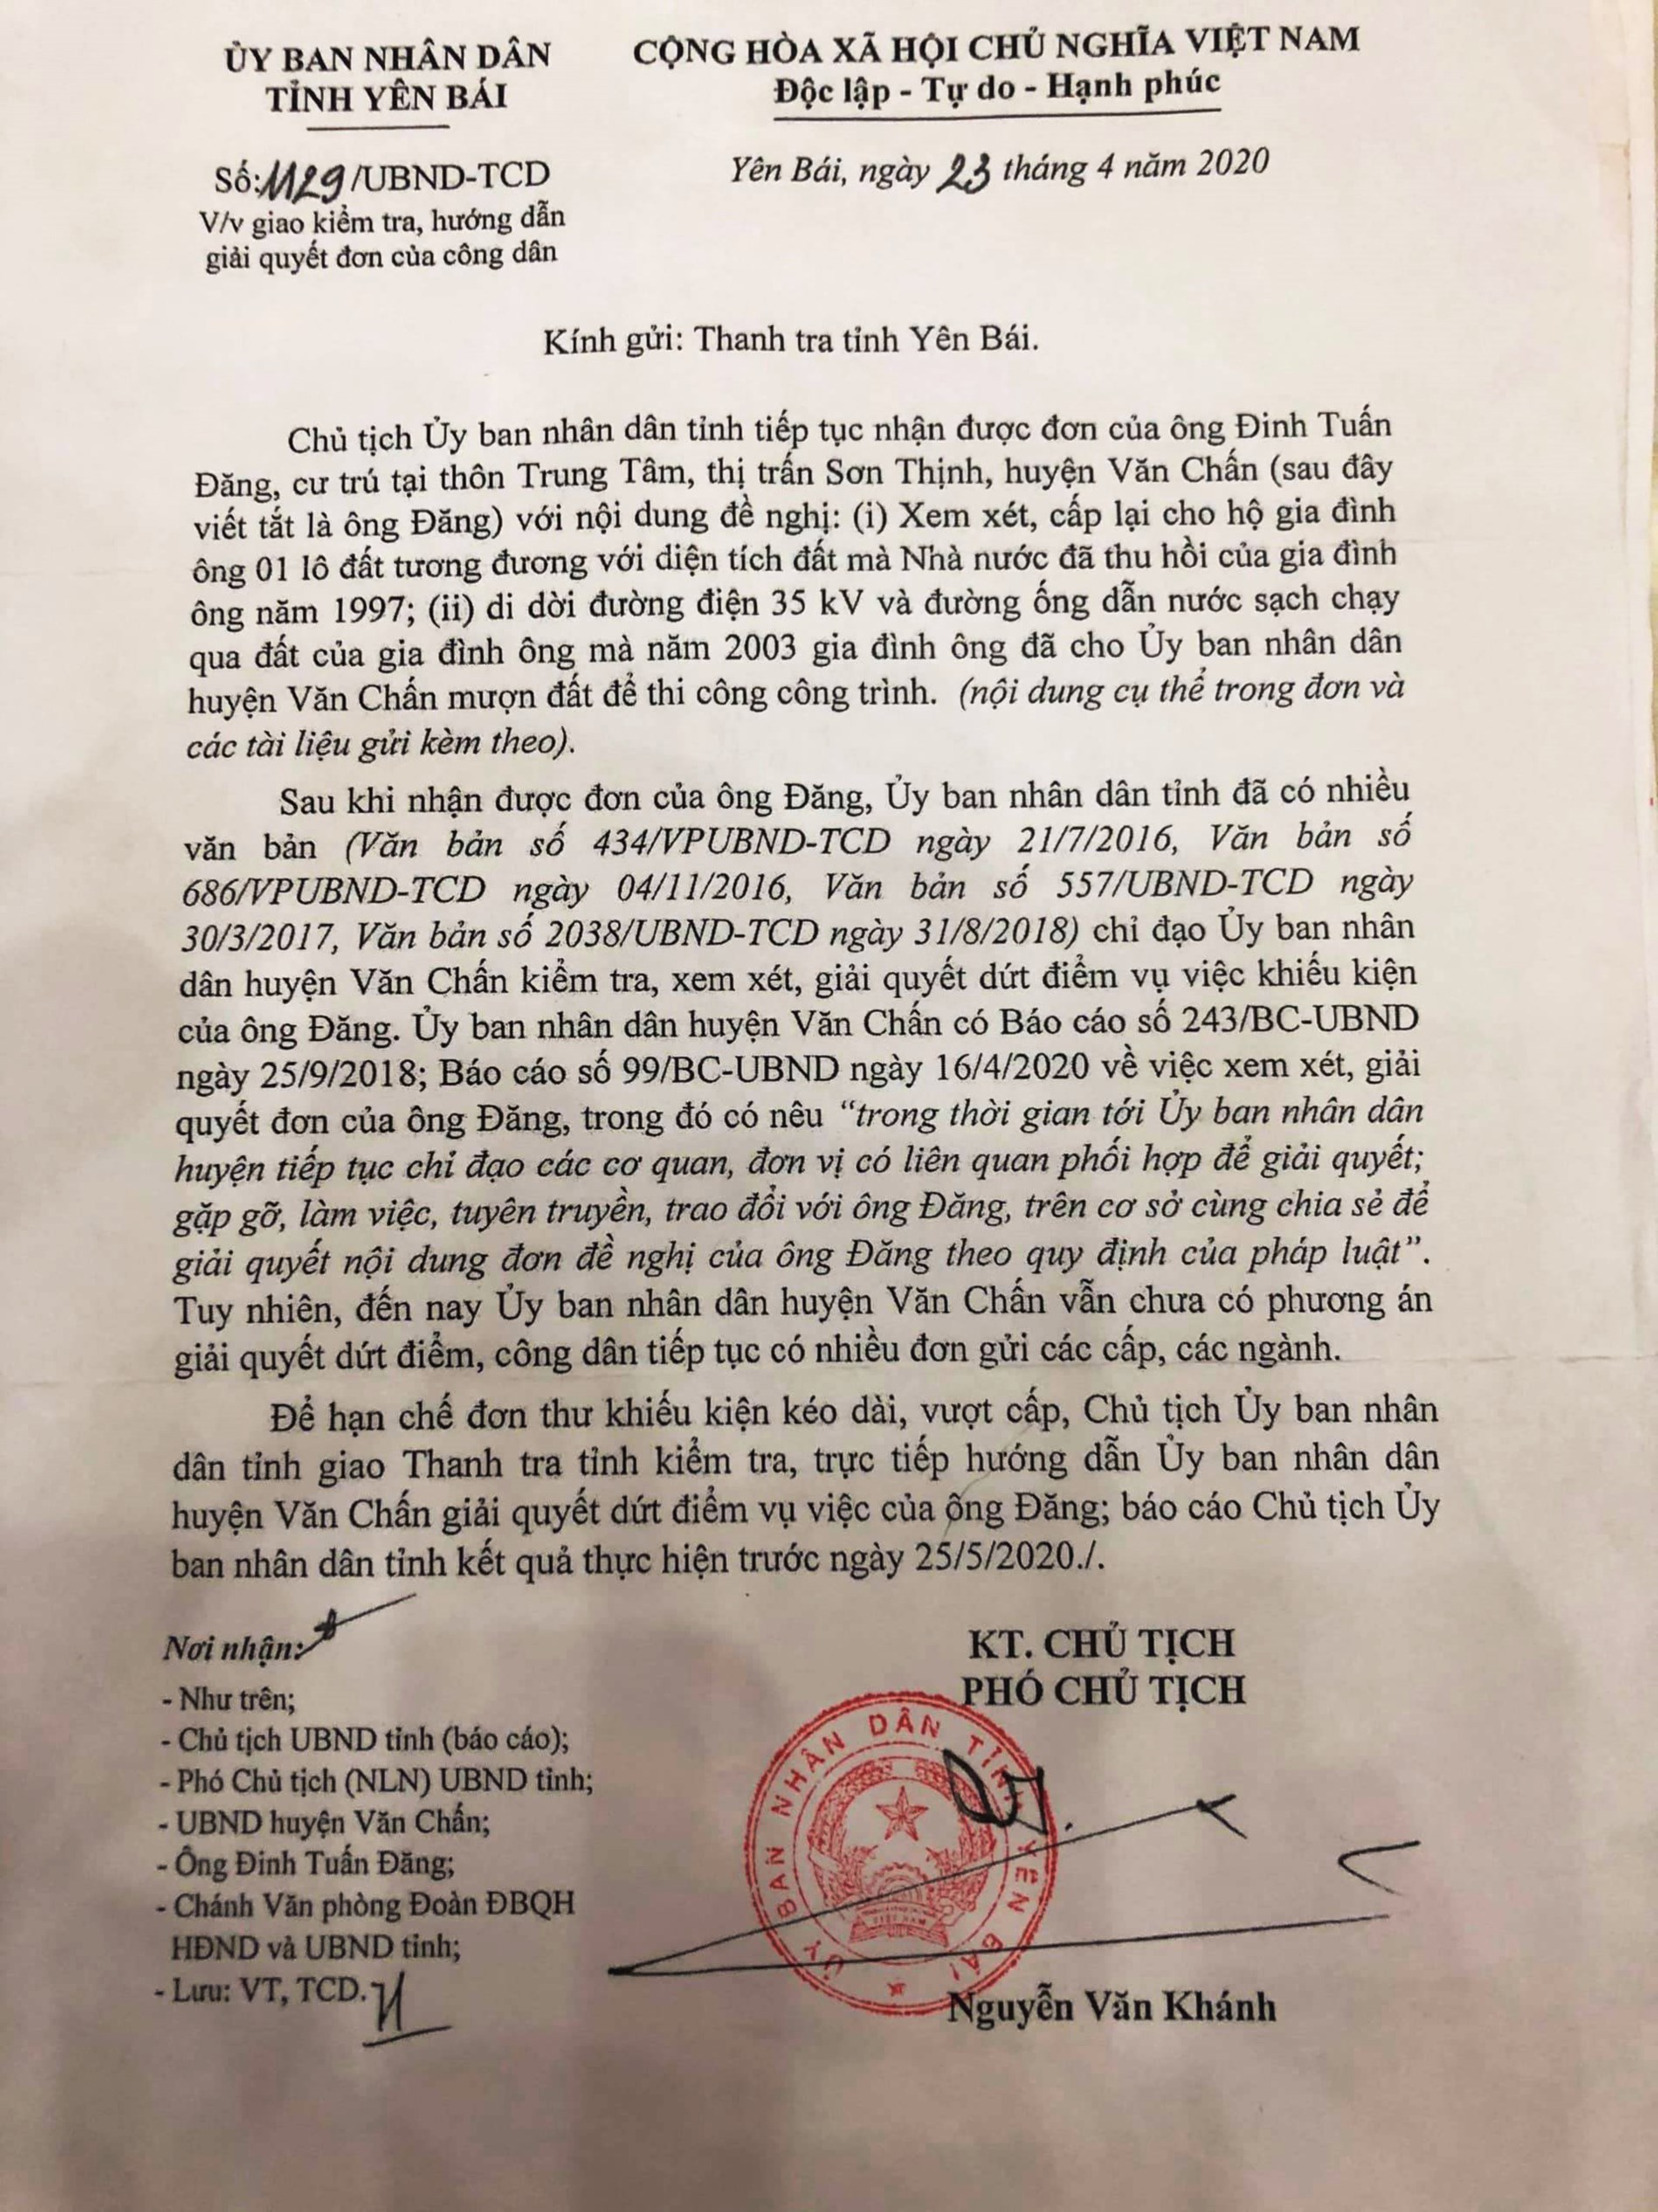 Văn bản của UBND tỉnh Yên Bái yêu cầu Thanh tra tỉnh kiểm tra, hướng dẫn xử lý dứt điểm vụ việc của ông Đăng